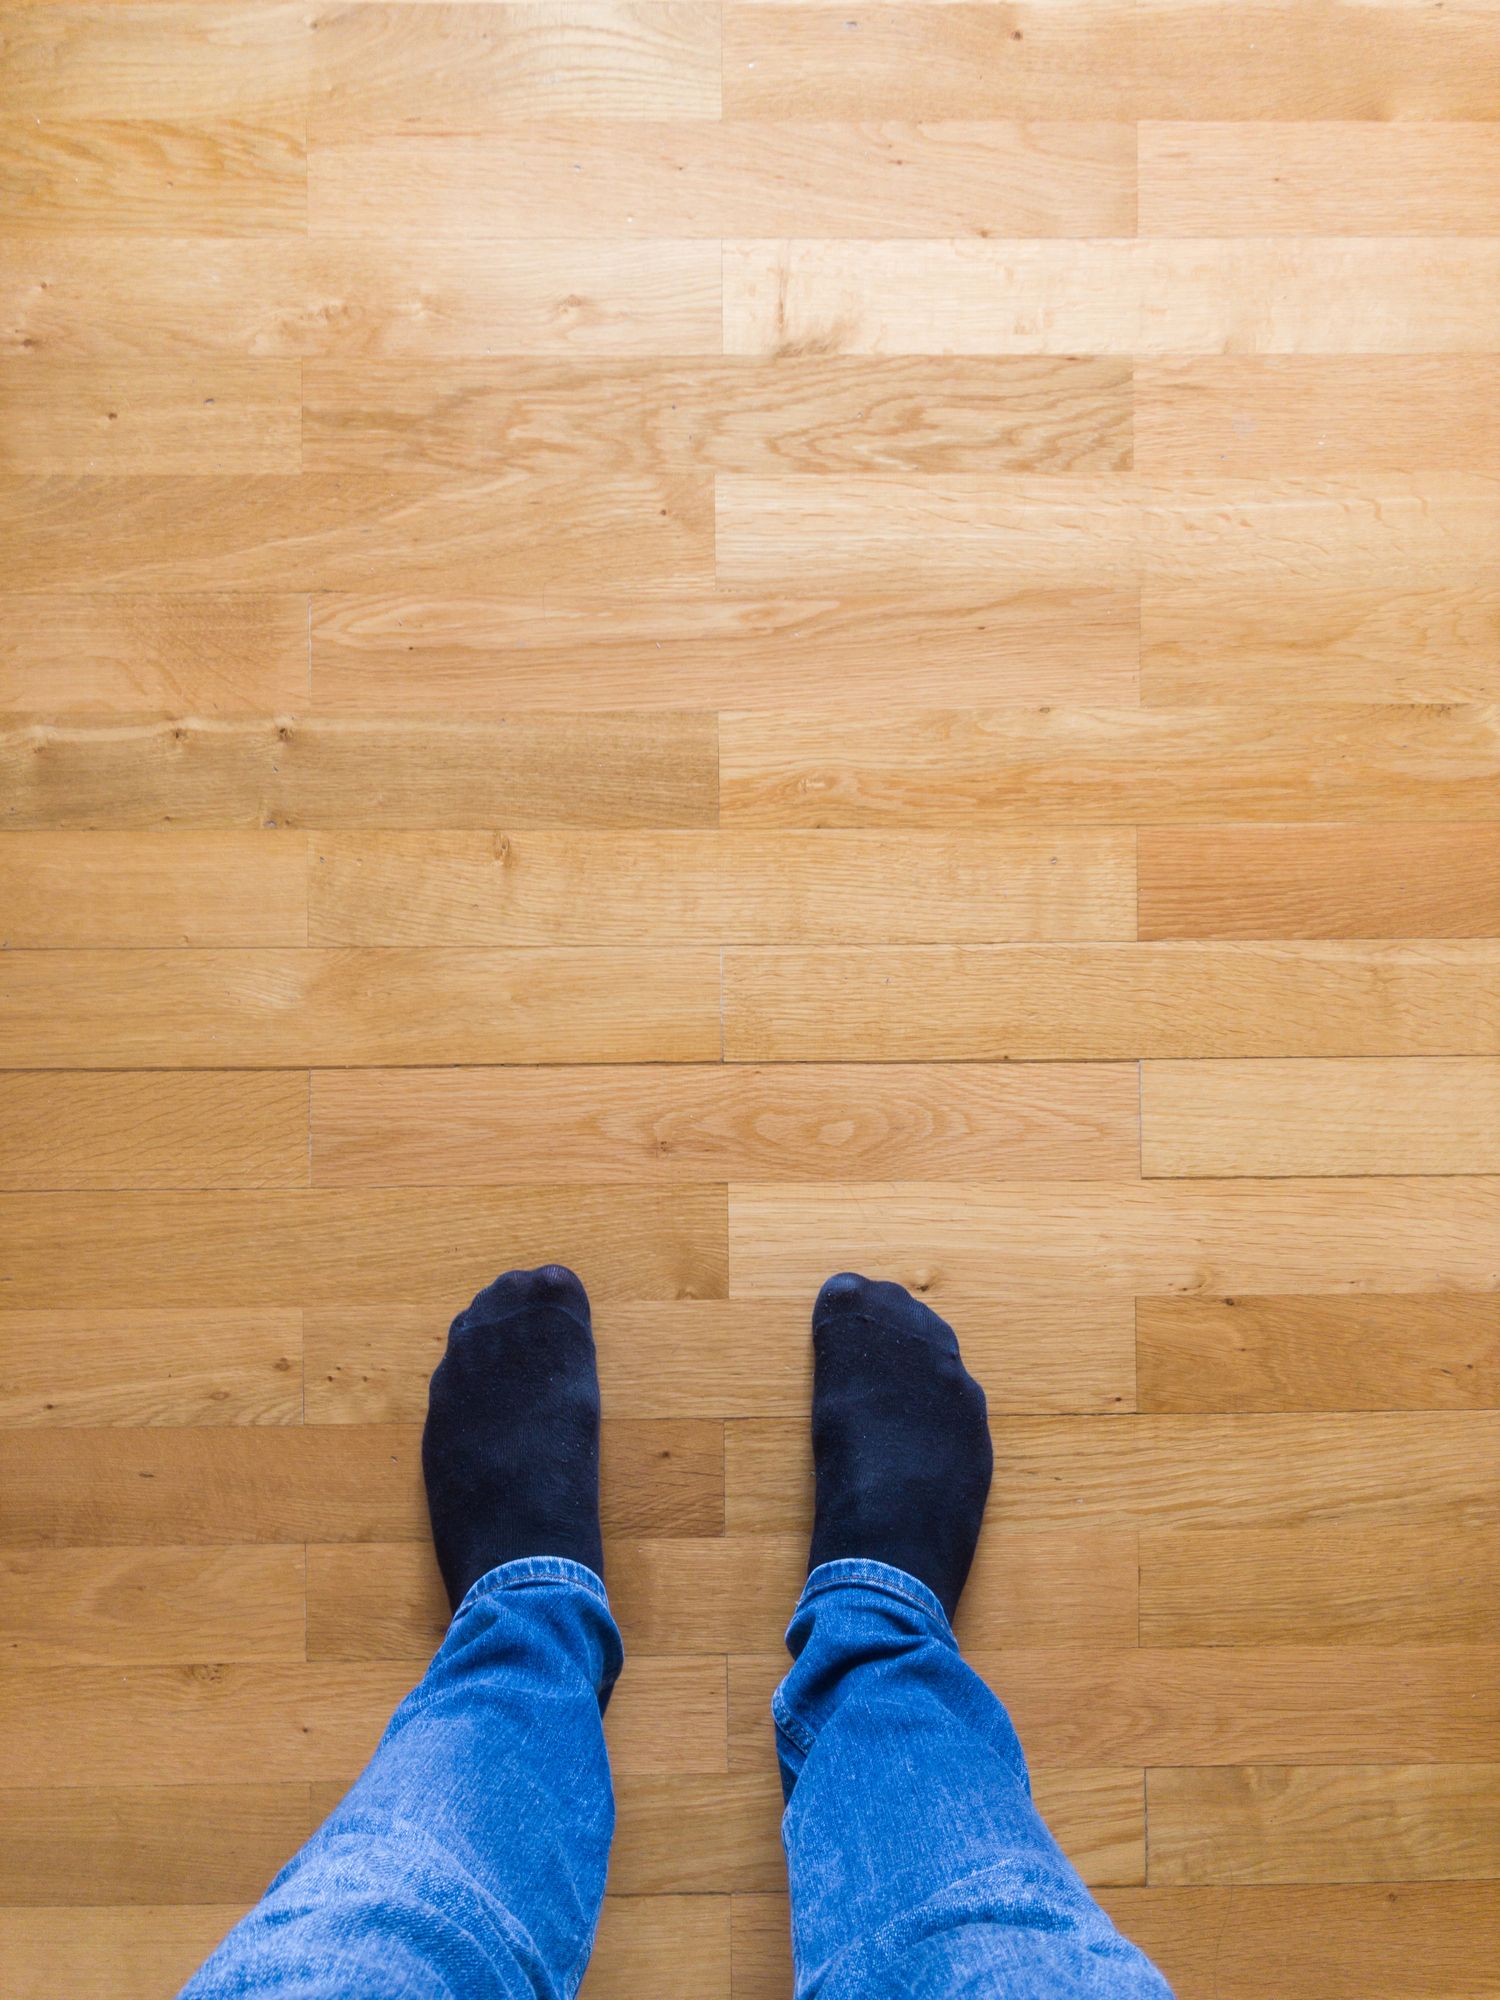 Squeaky Floor Repair, How To Fix Hardwood Floors That Pop